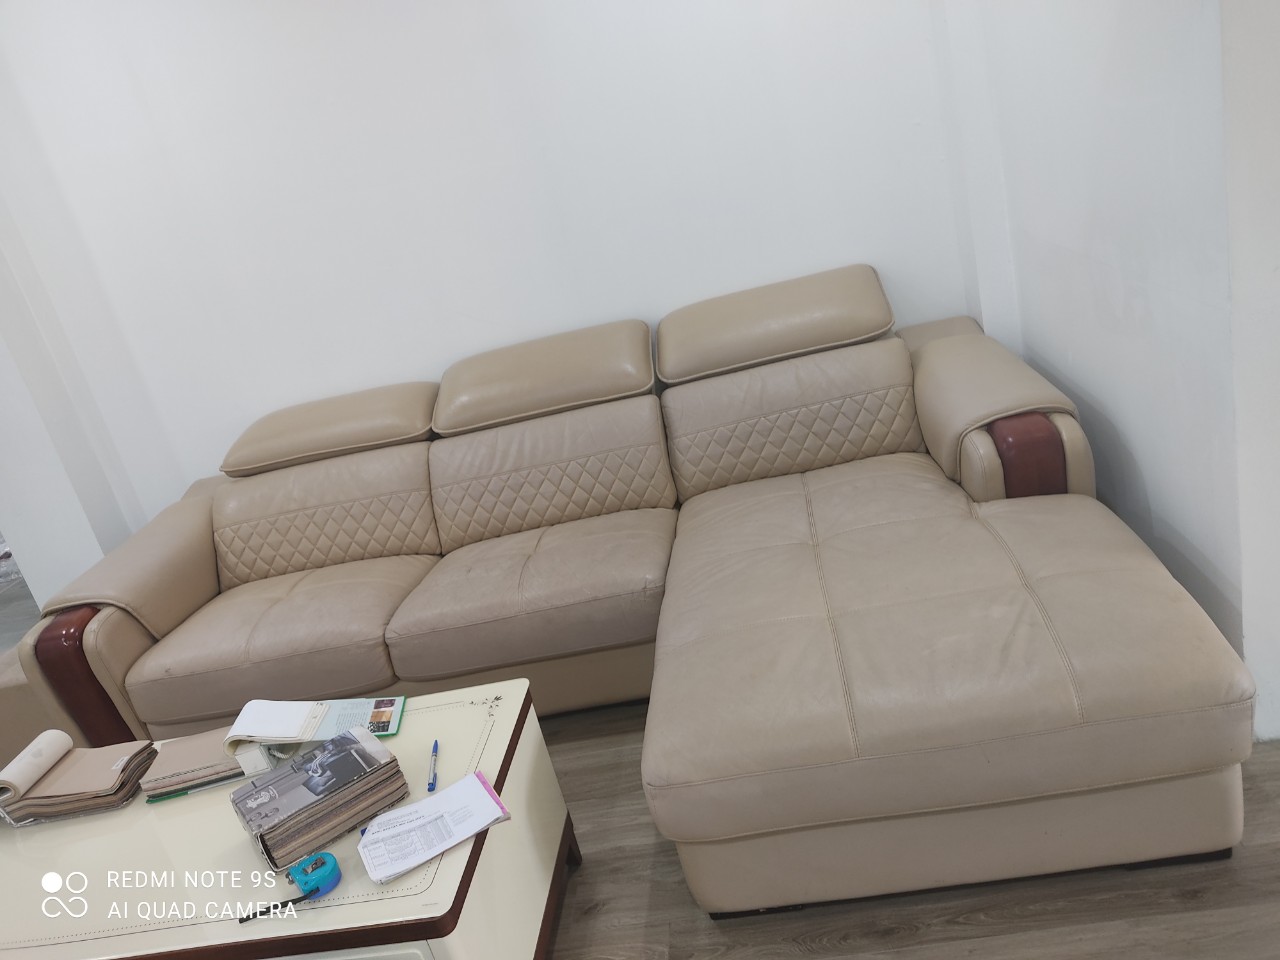 Bộ ghế sofa có diện mạo ban đầu của khách hàng tại Phạm Ngũ Lão, Quận 1